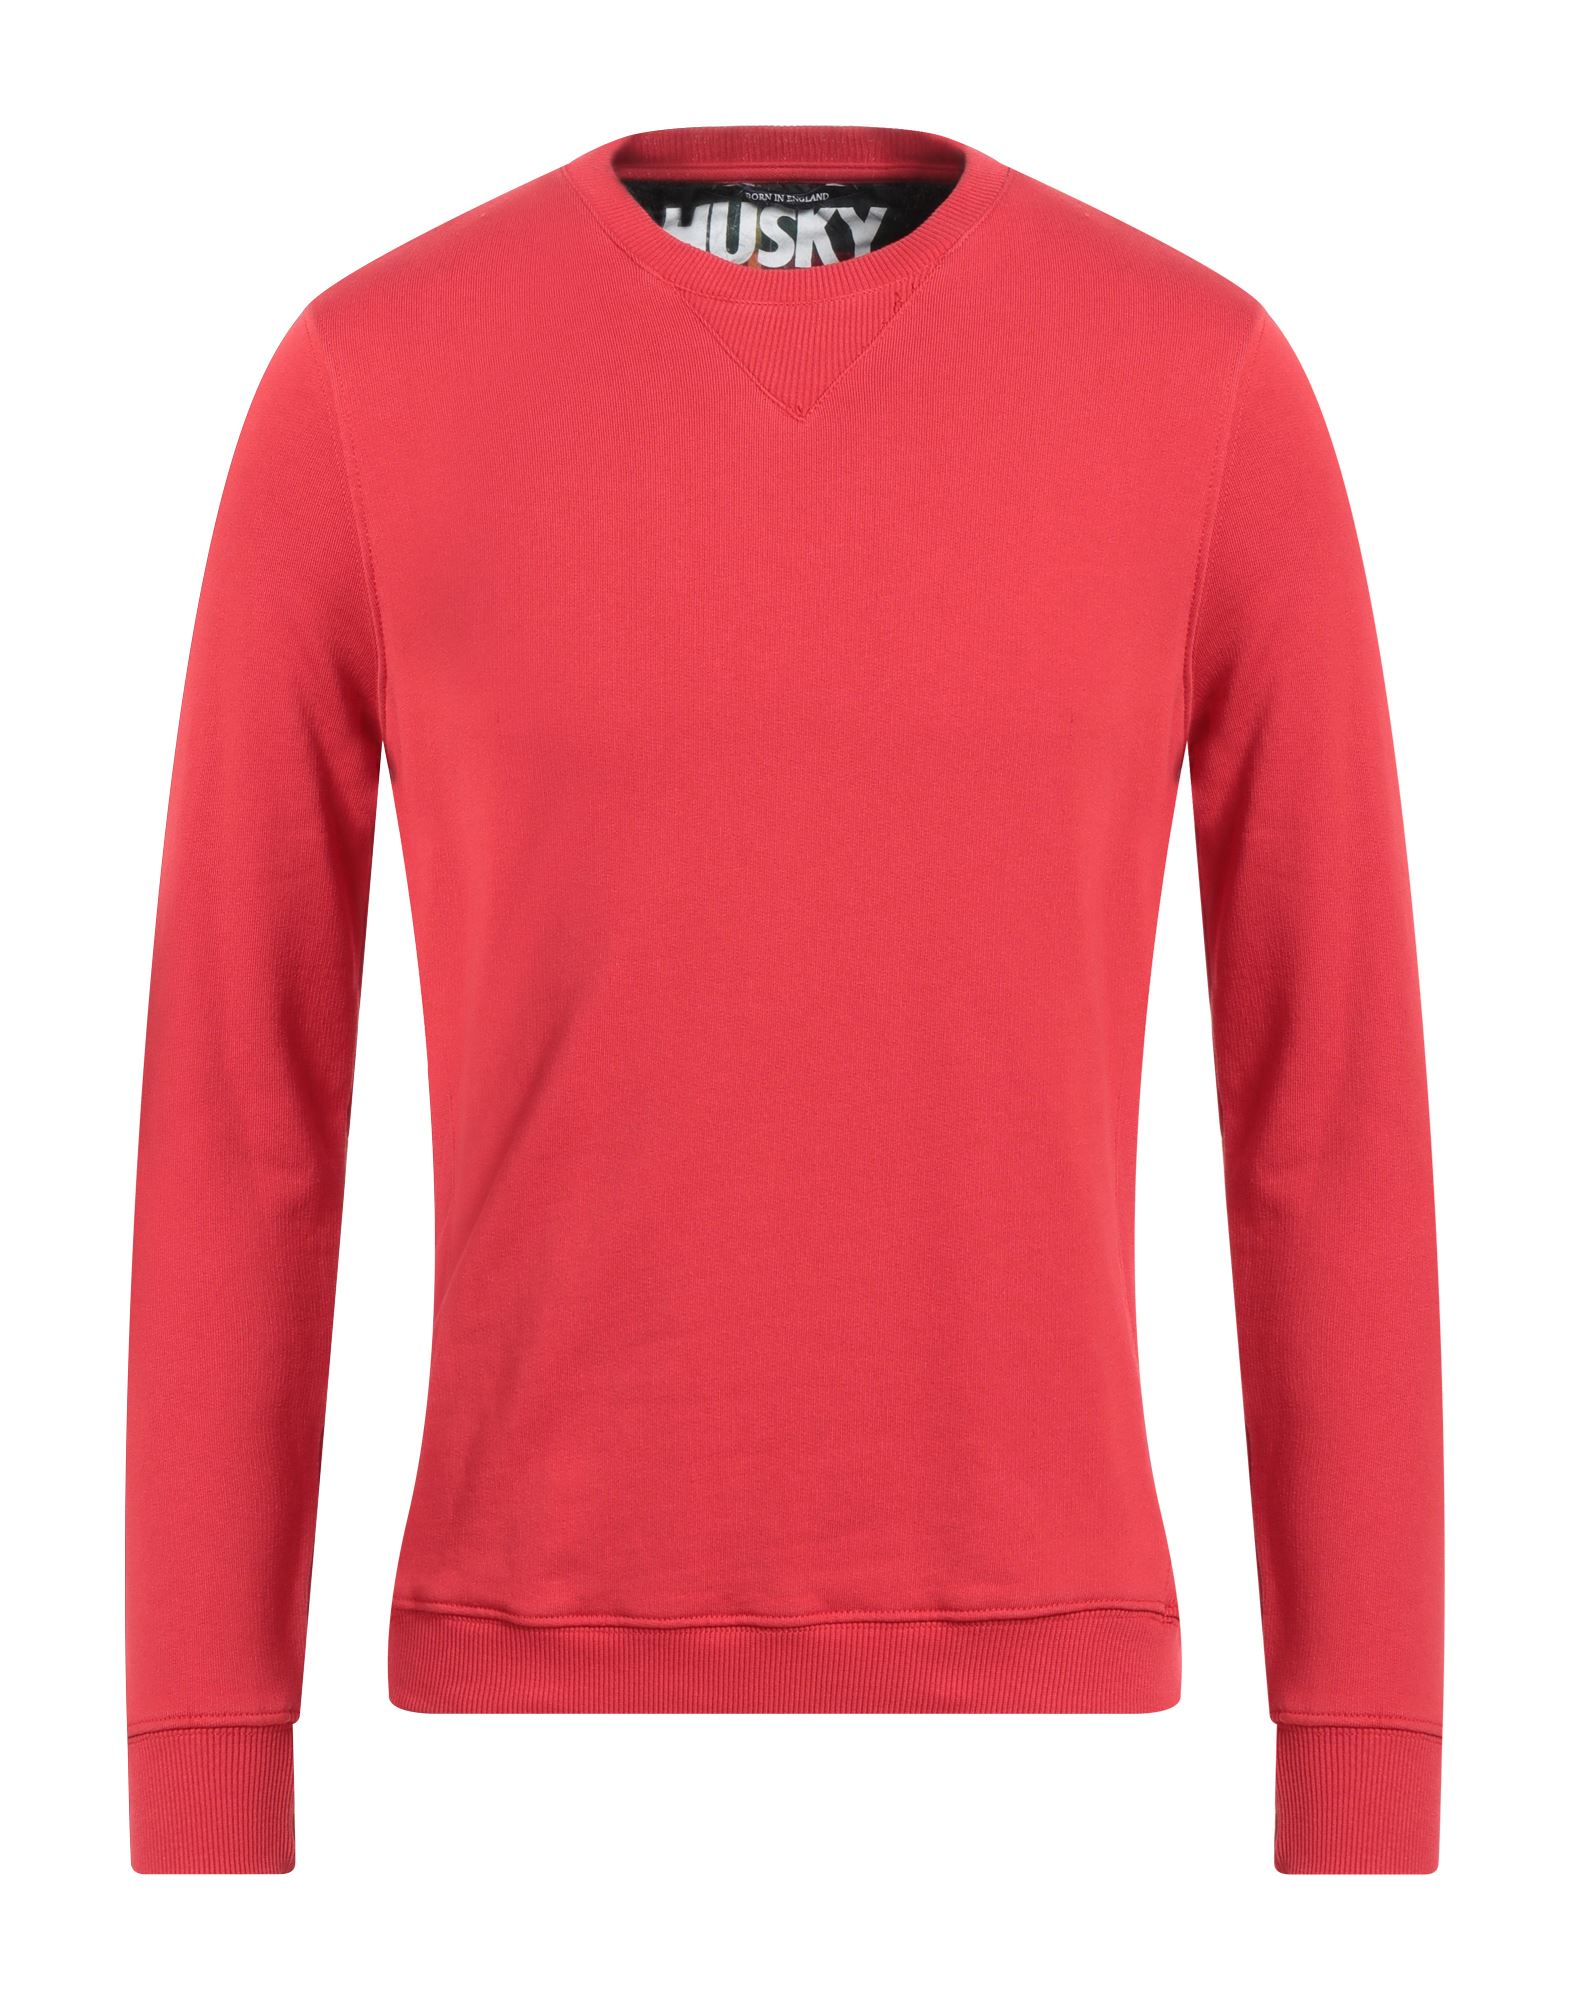 HUSKY Sweatshirt Herren Rot von HUSKY